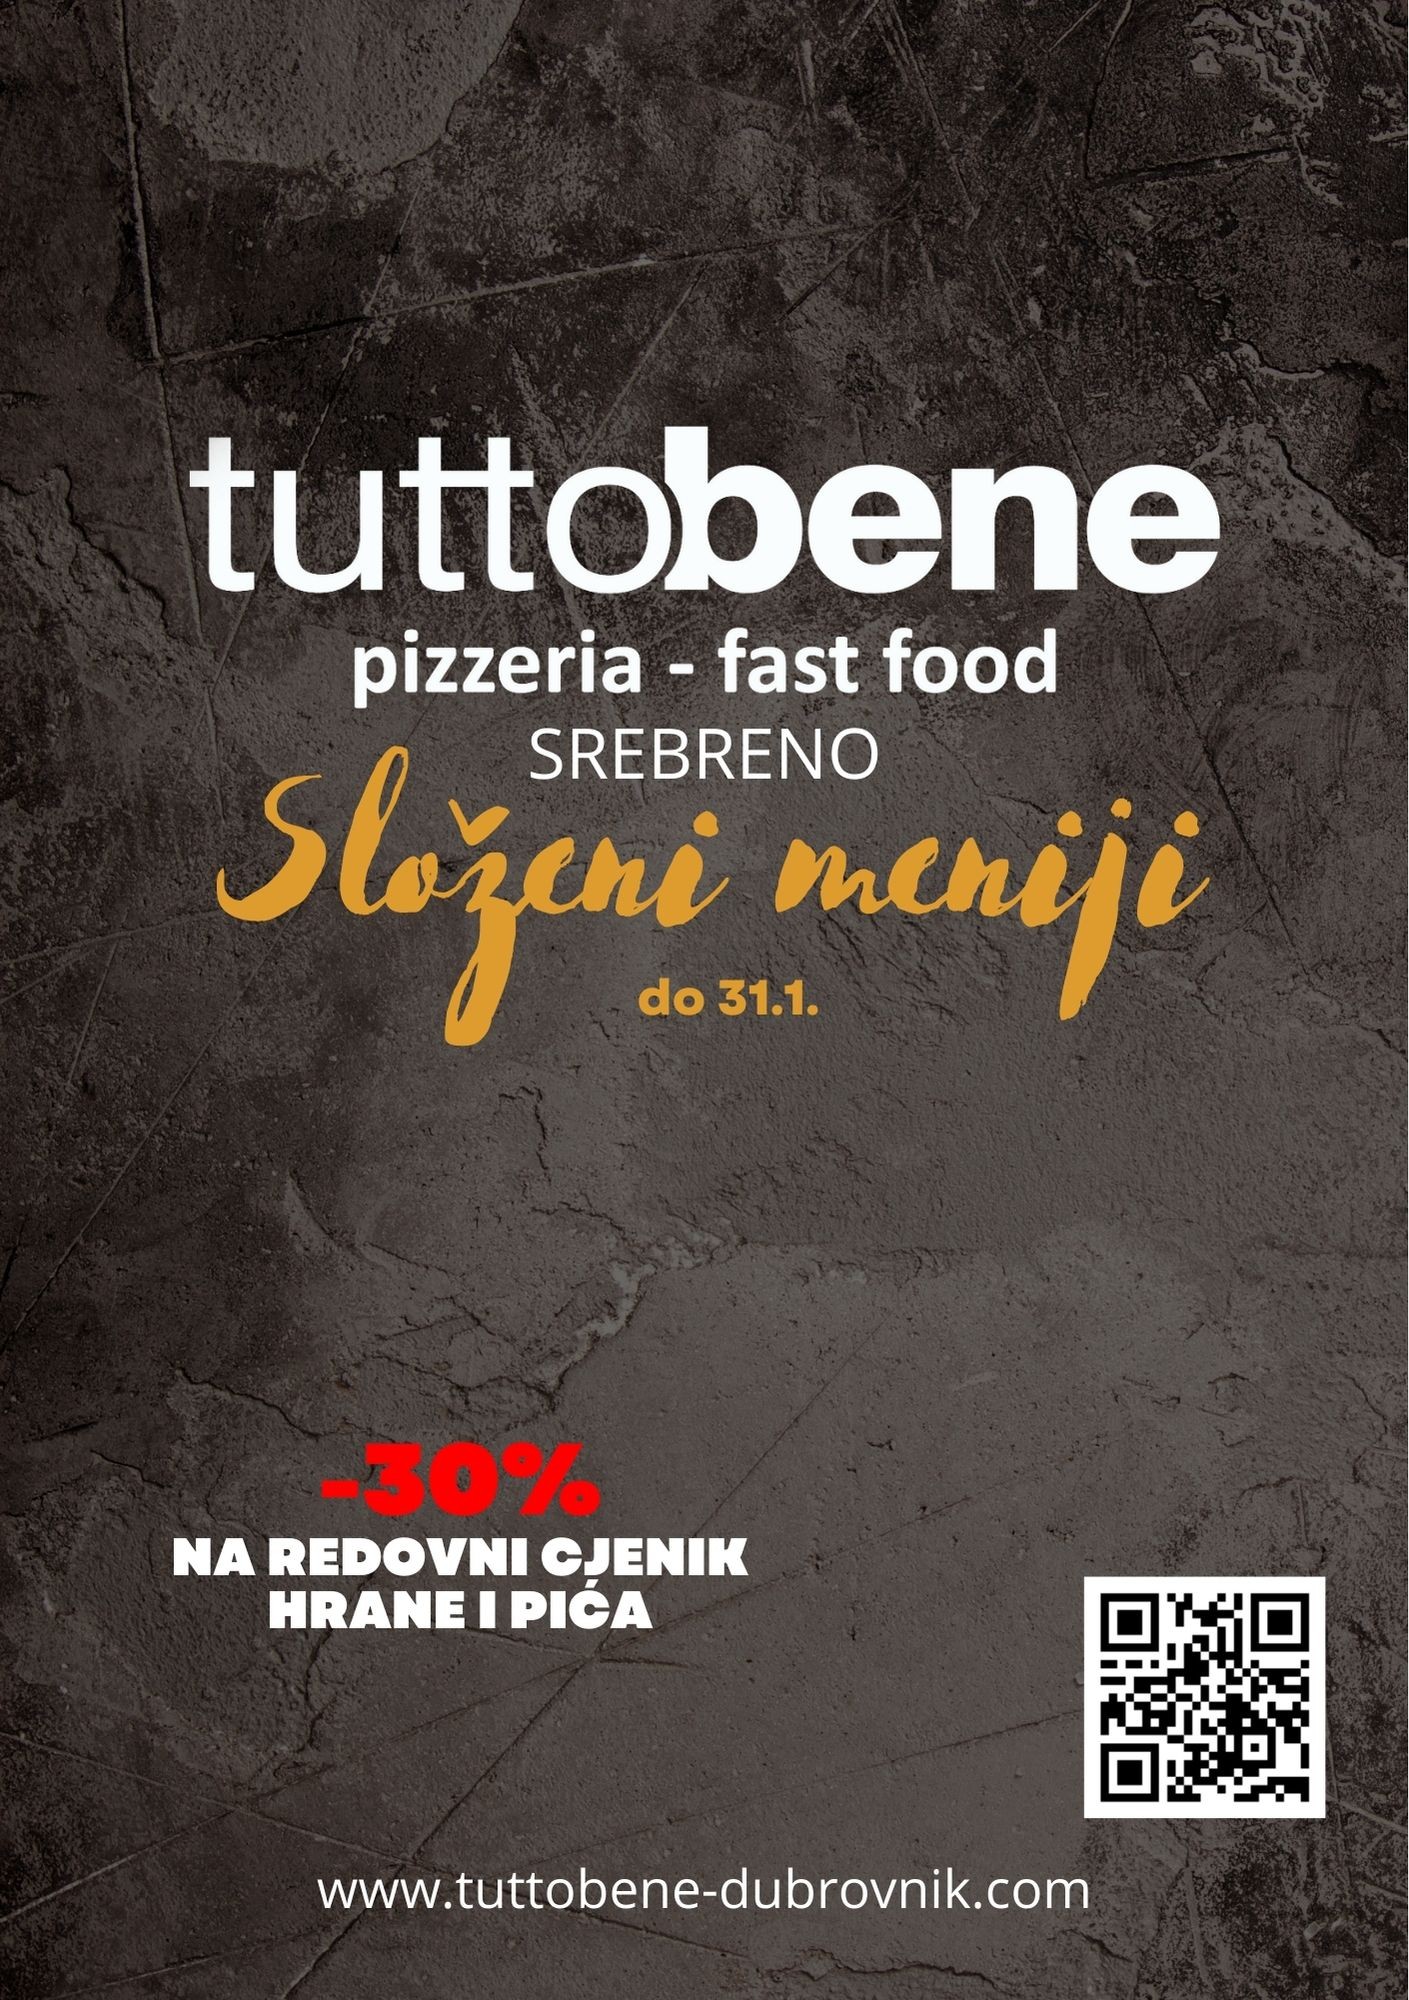 TuttoBene Srebreno započinje s radom uz posebnu ponudu složenih menija i popusta